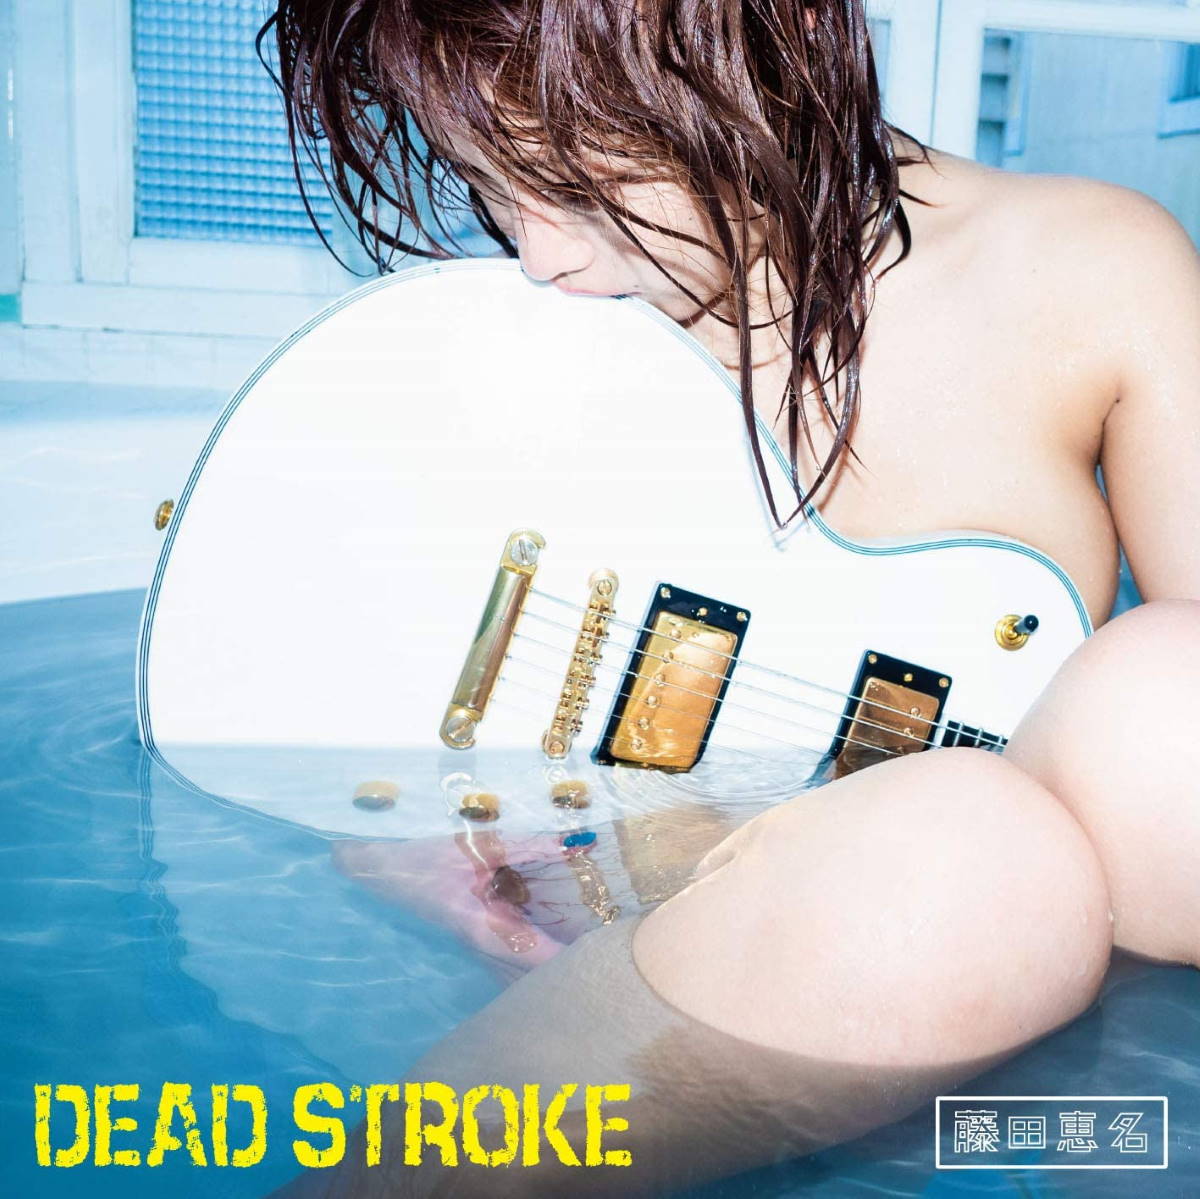 『藤田恵名 - DEAD STROKE』収録の『DEAD STROKE』ジャケット